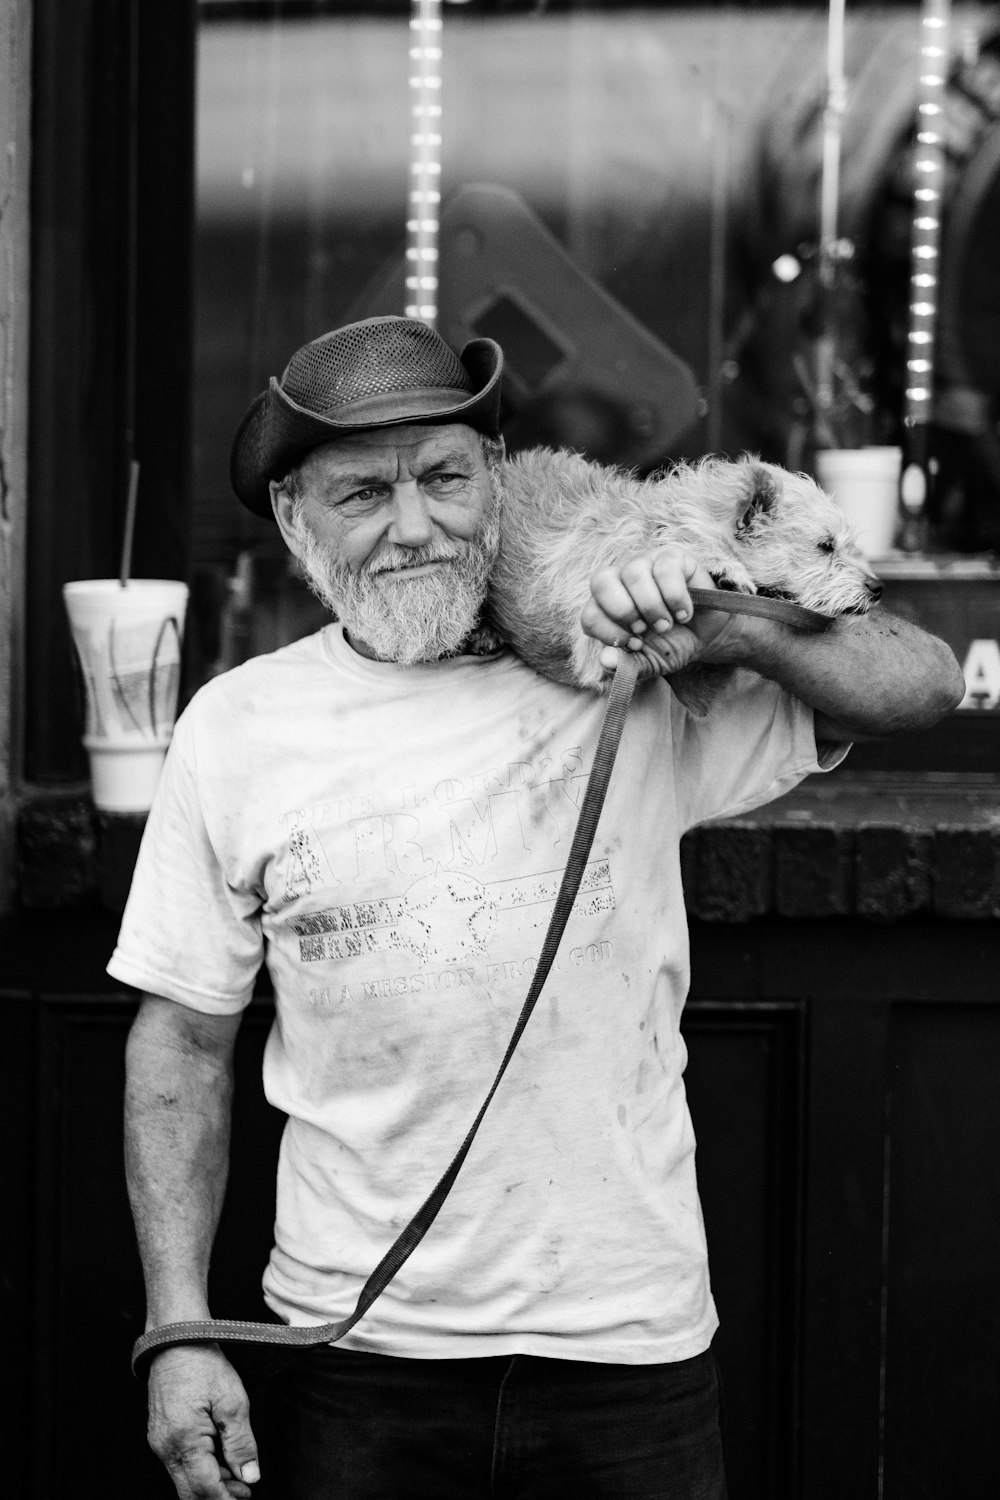 fotografia em tons de cinza de um homem carregando cachorro